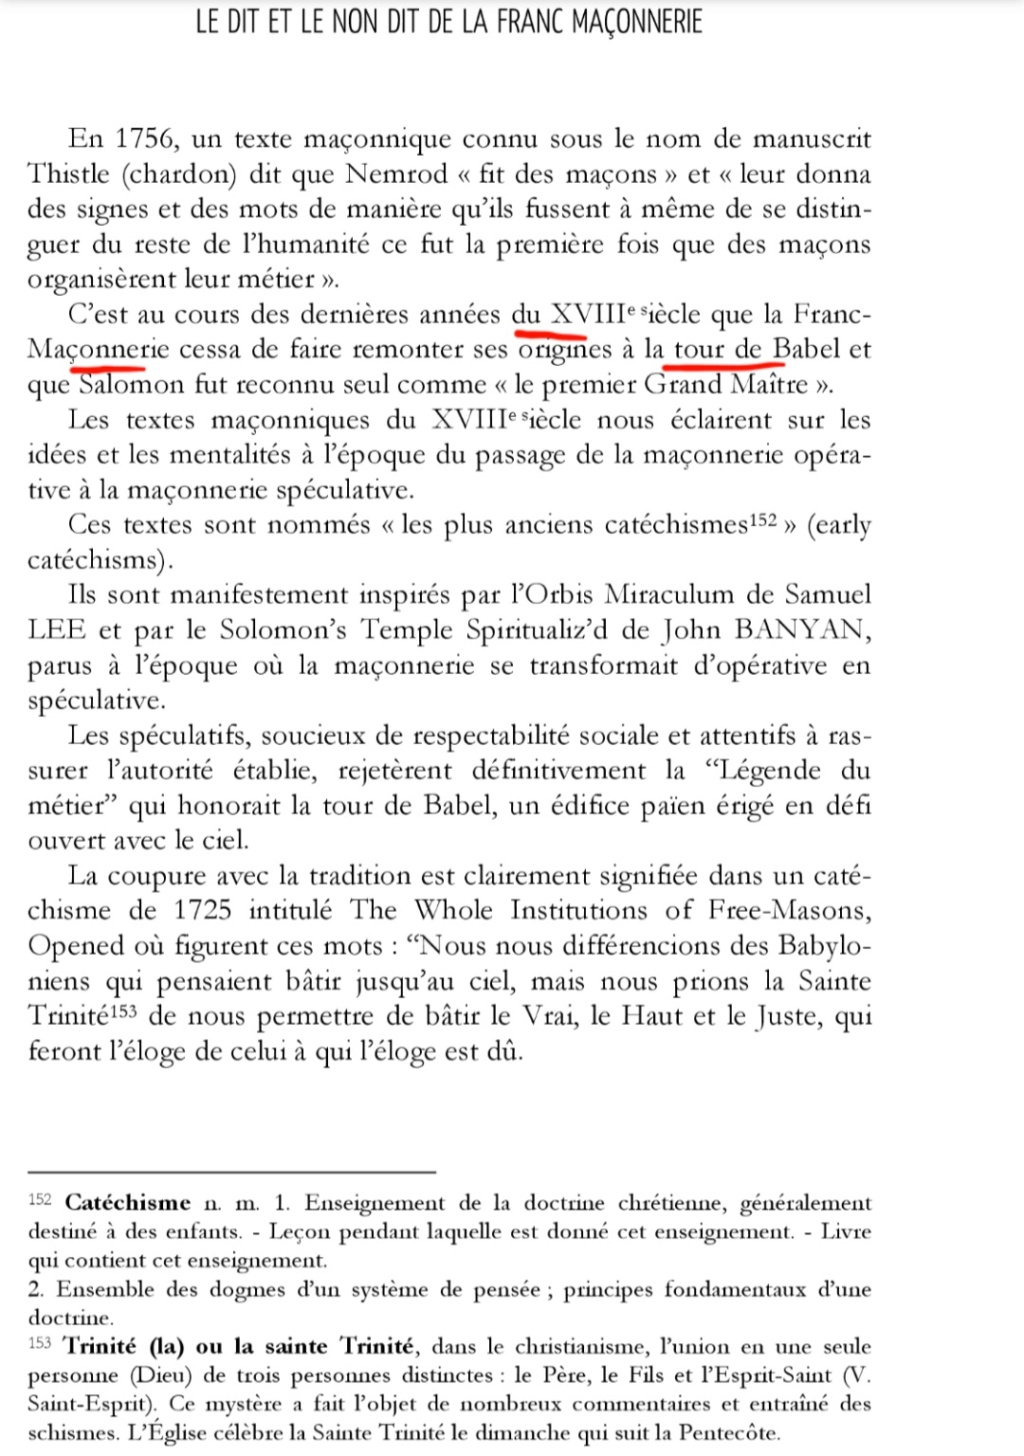 La franc-maçonnerie, la Gnose et le gnosticisme.  - Page 7 Scree625